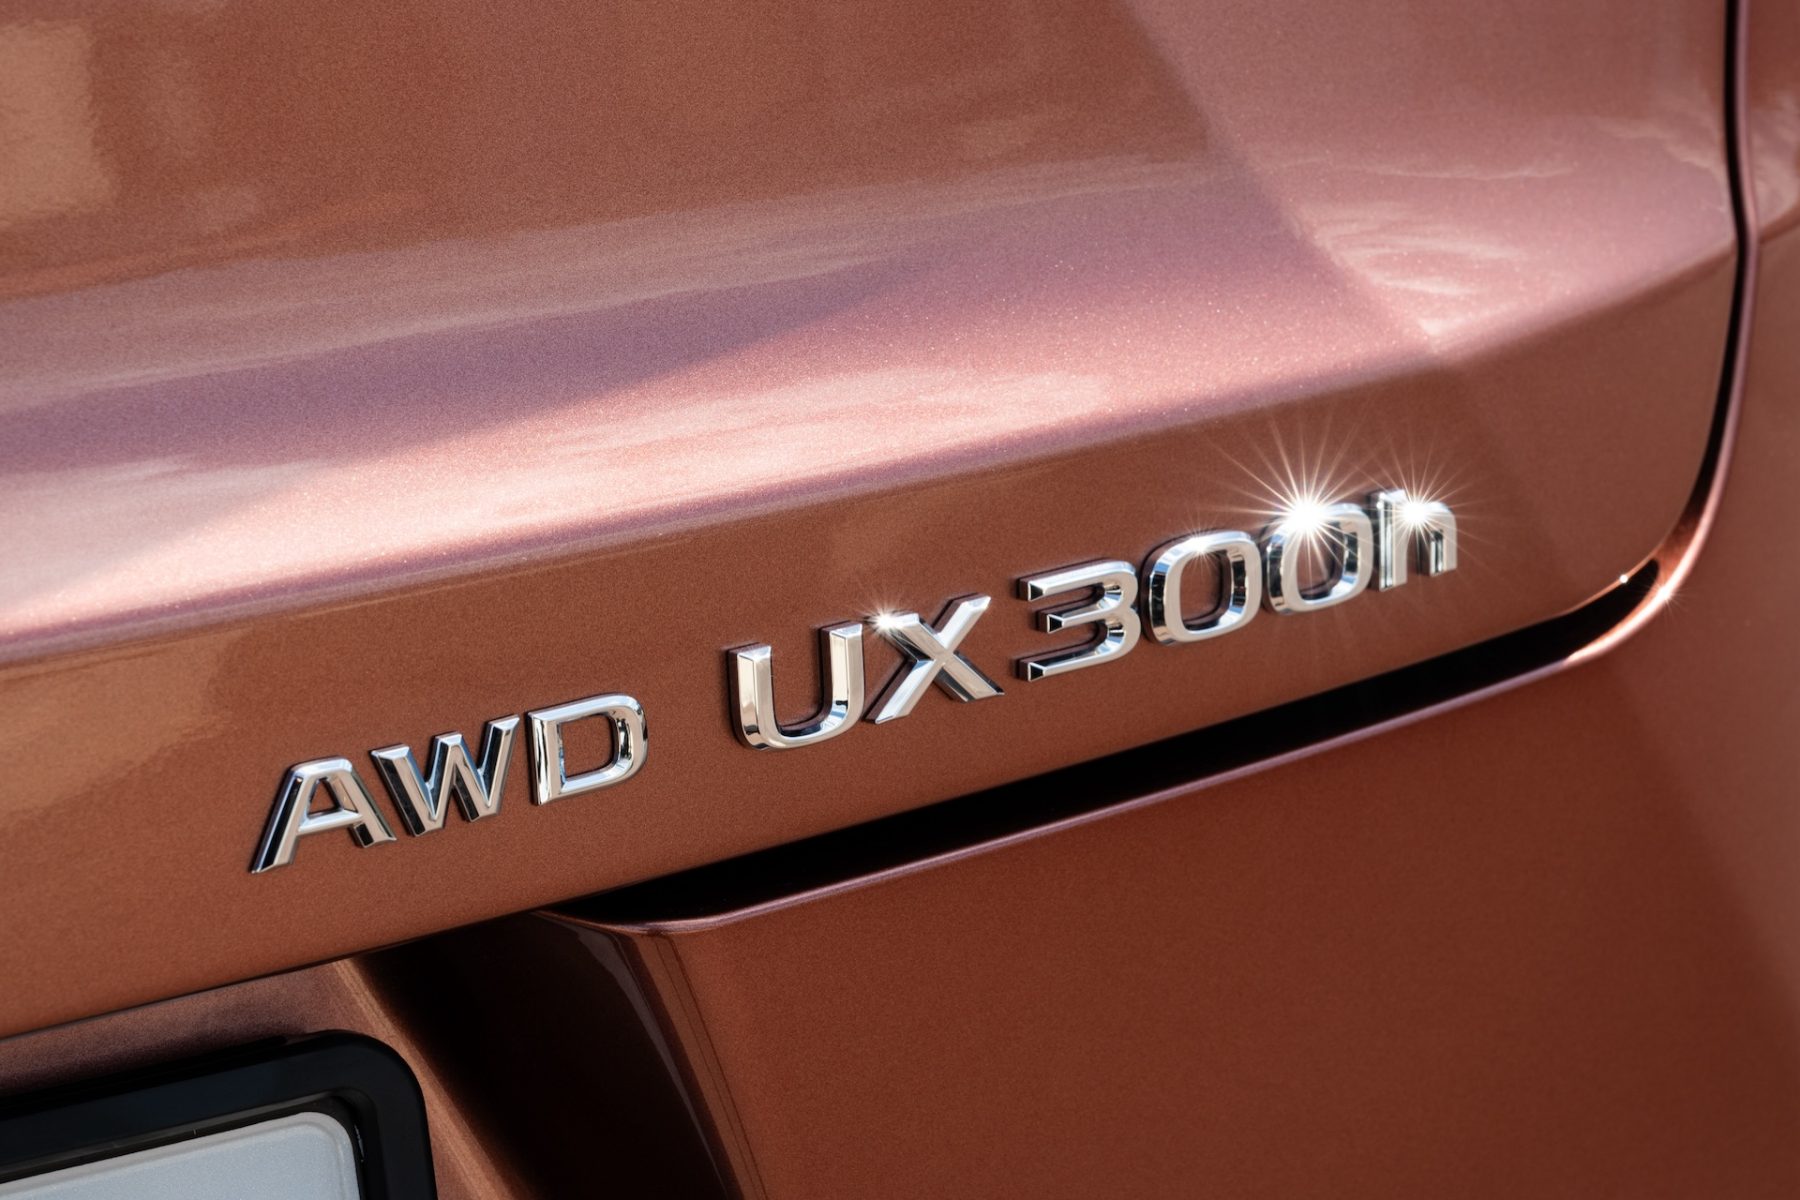 Lexus UX 300h